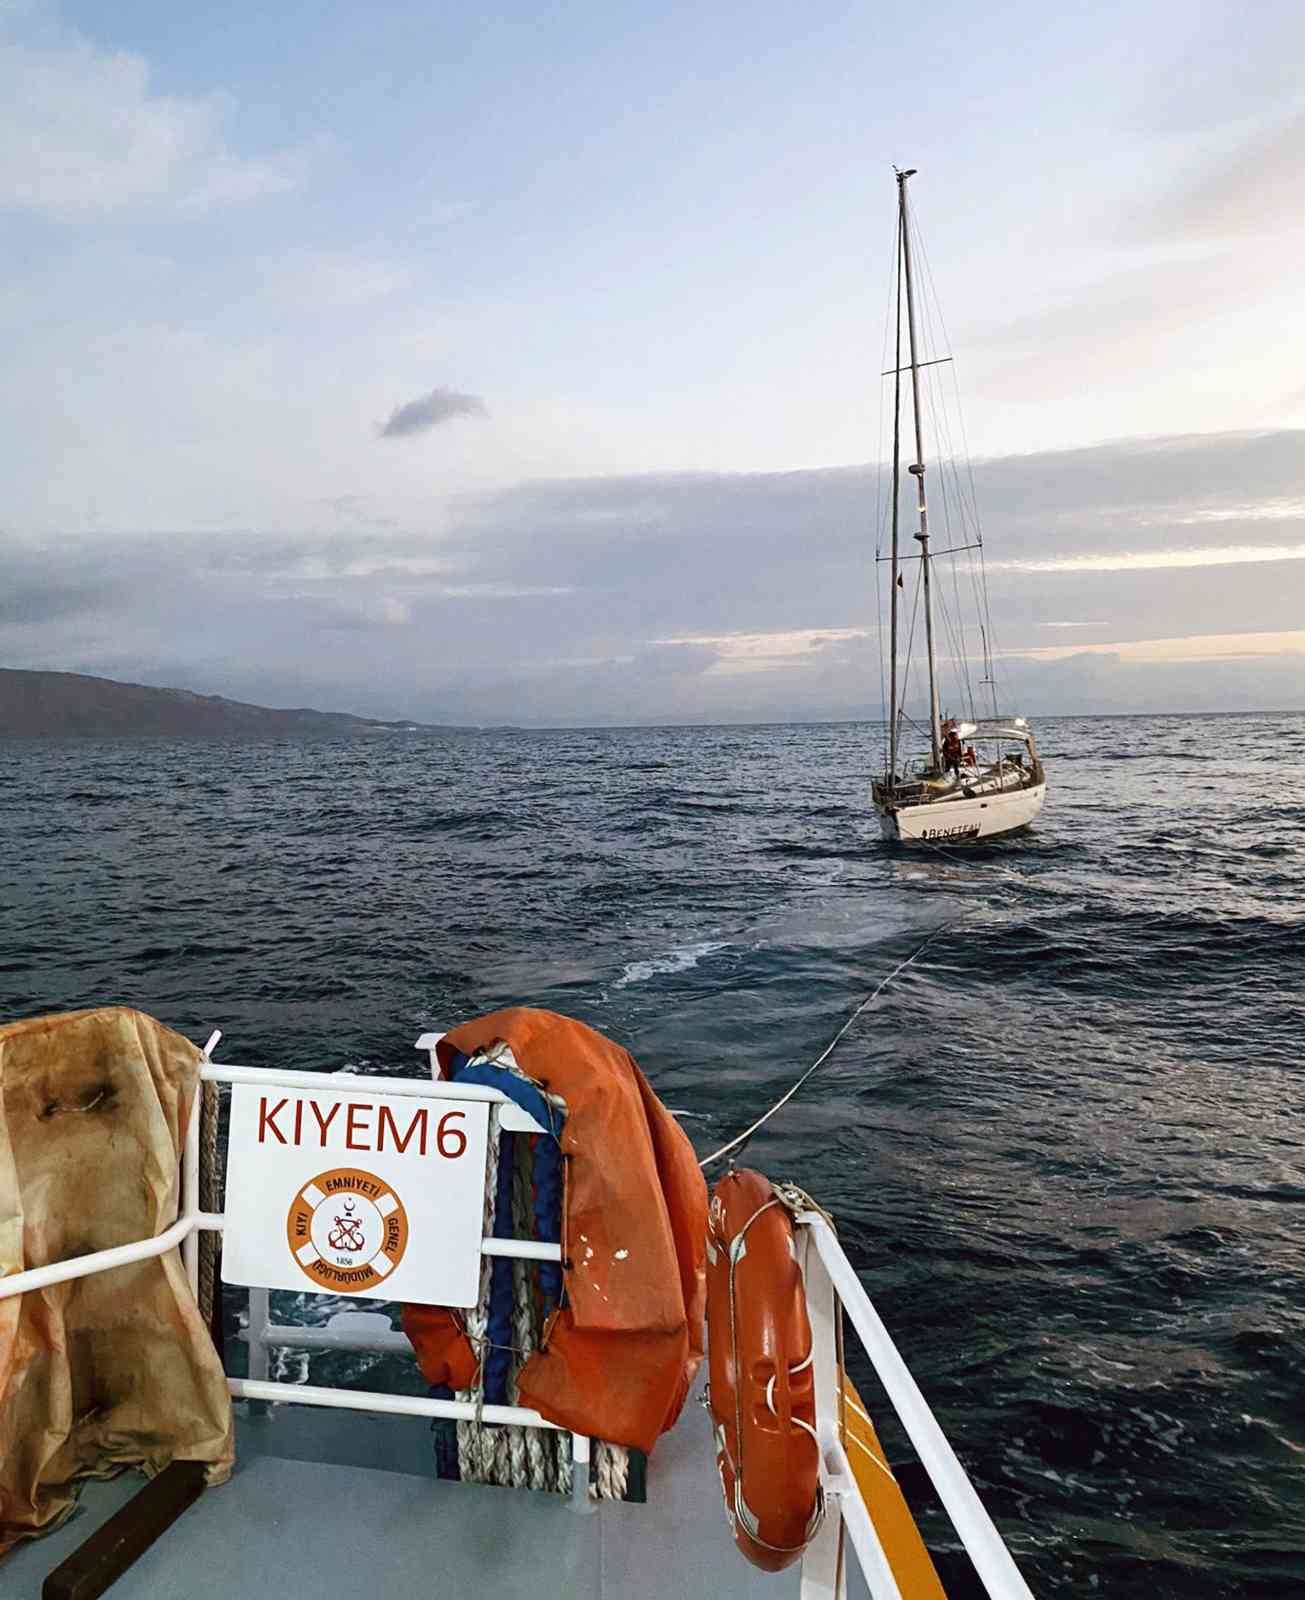 İstanköy adasına sürüklenen tekne kurtarıldı